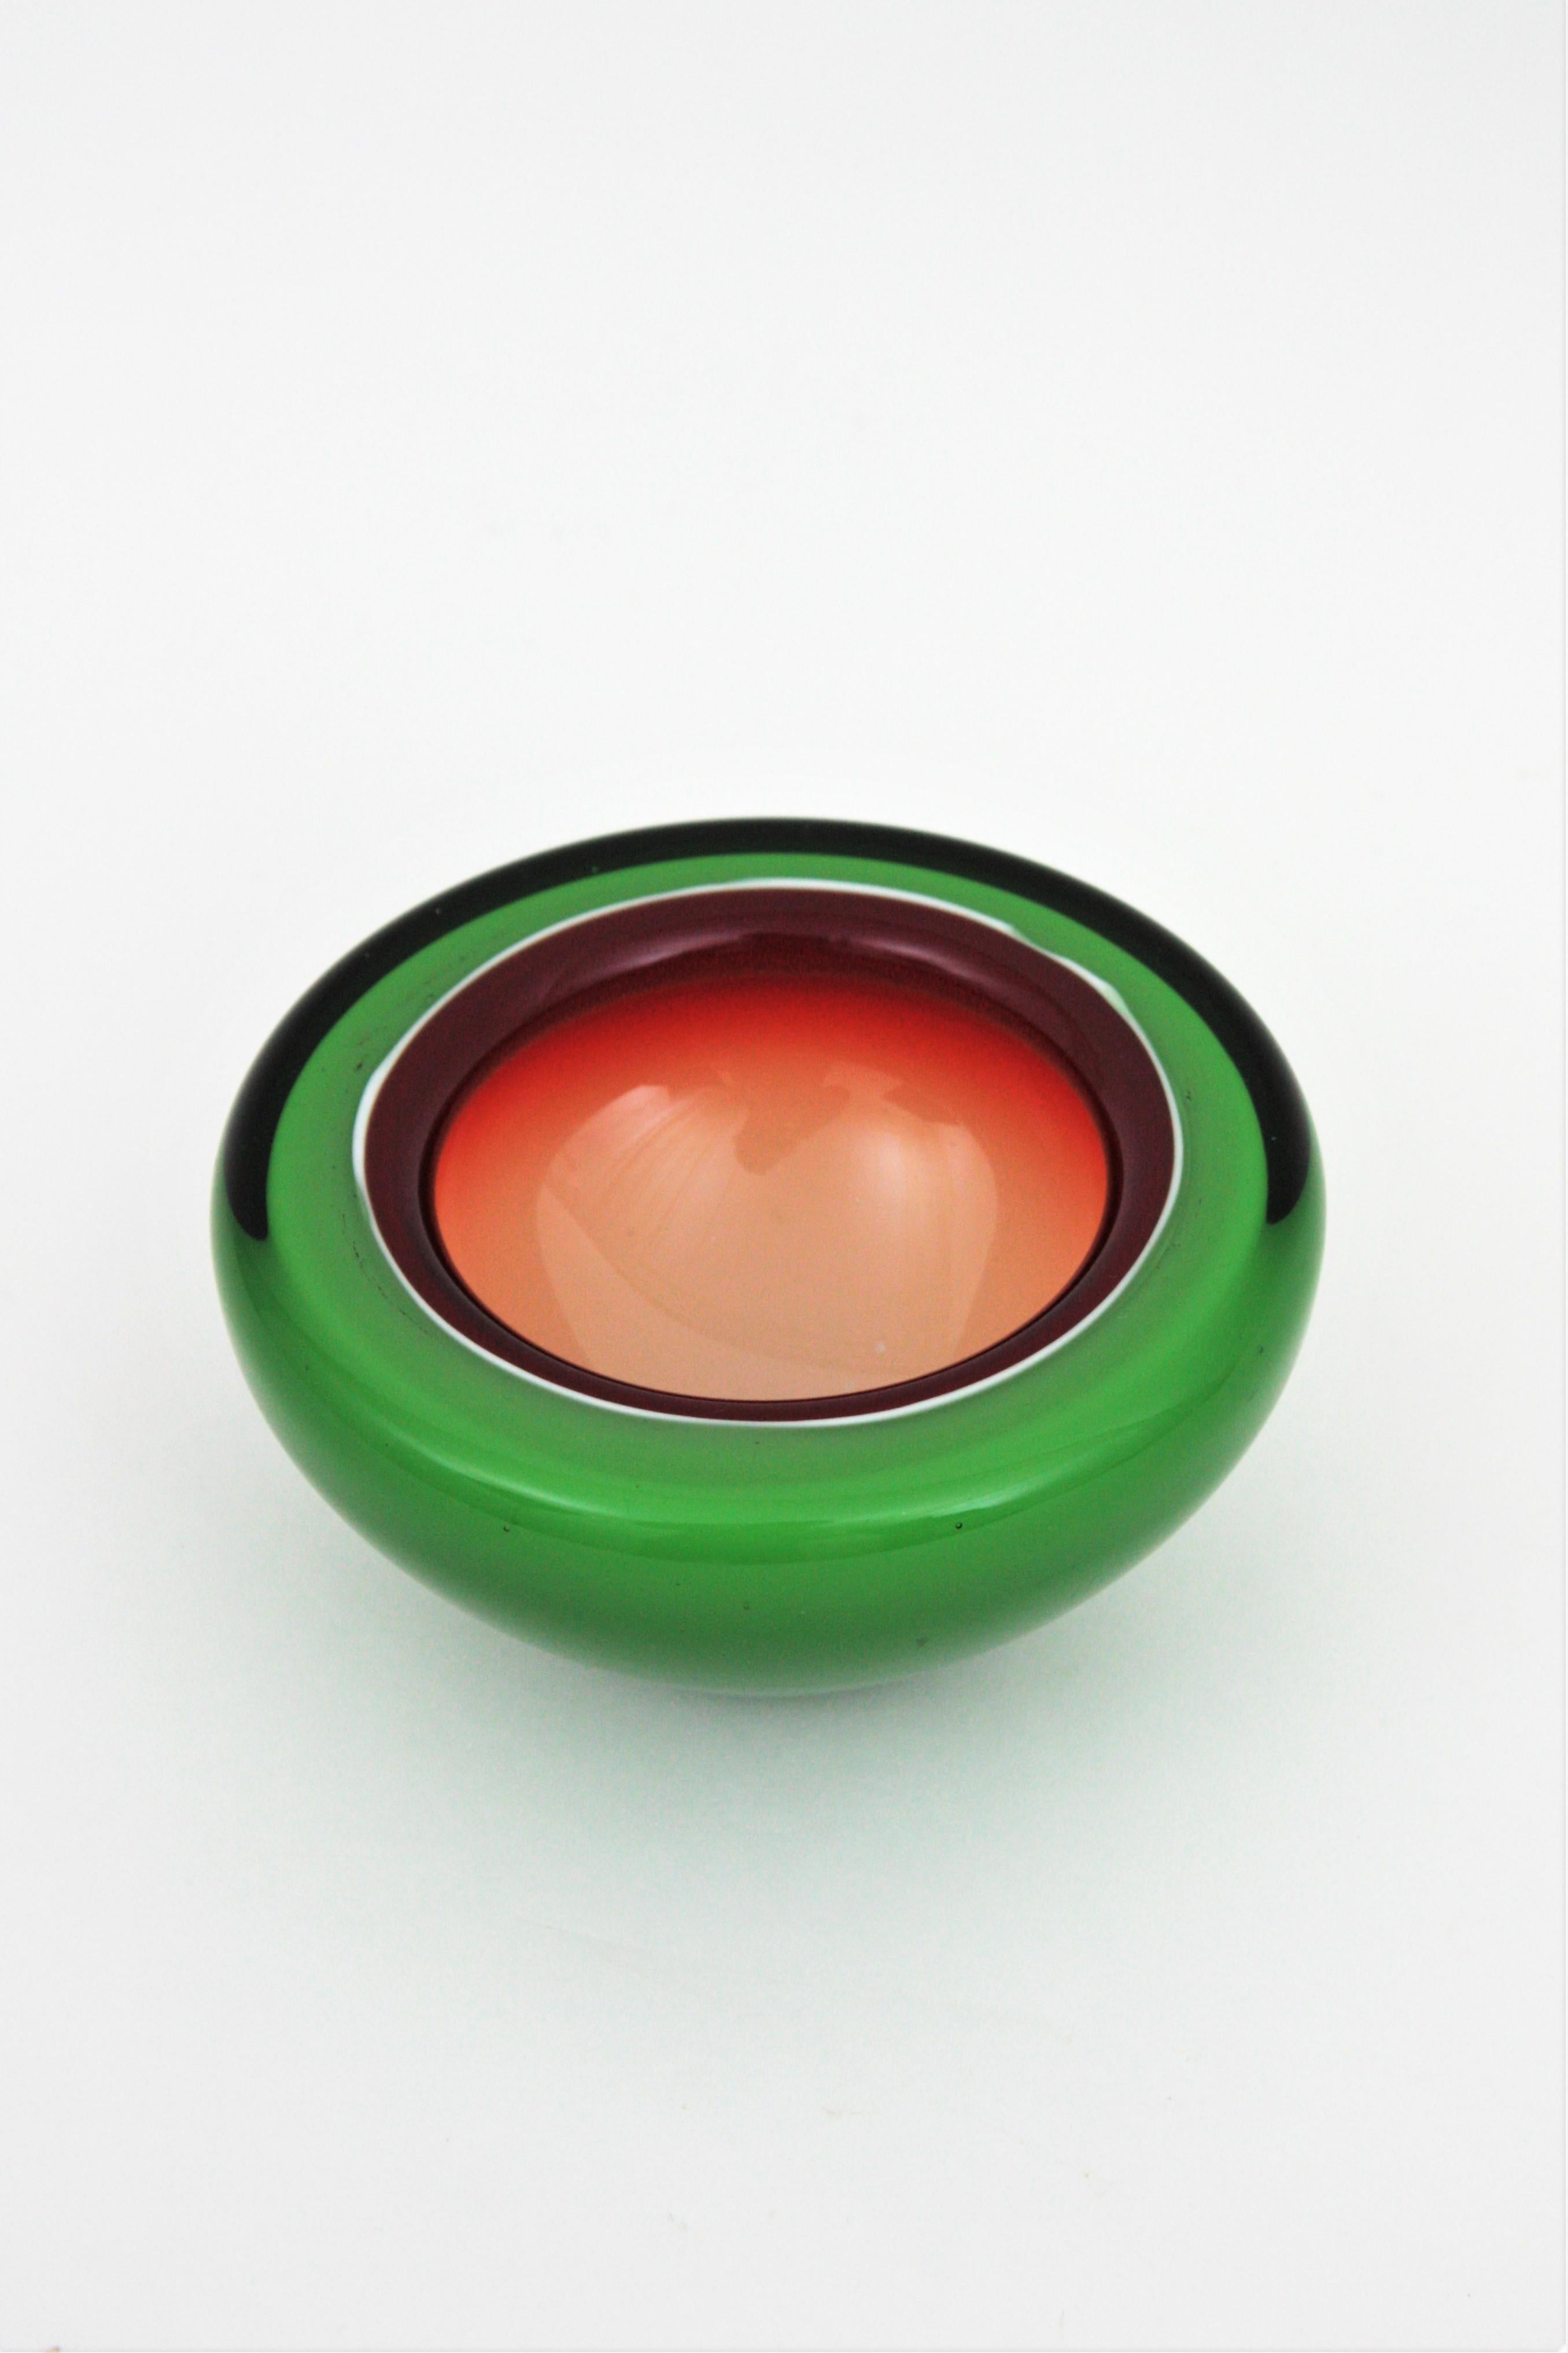 Barbini Murano Sommerso Green Garnet White Geode Art Glass Bowl / Ashtray For Sale 3